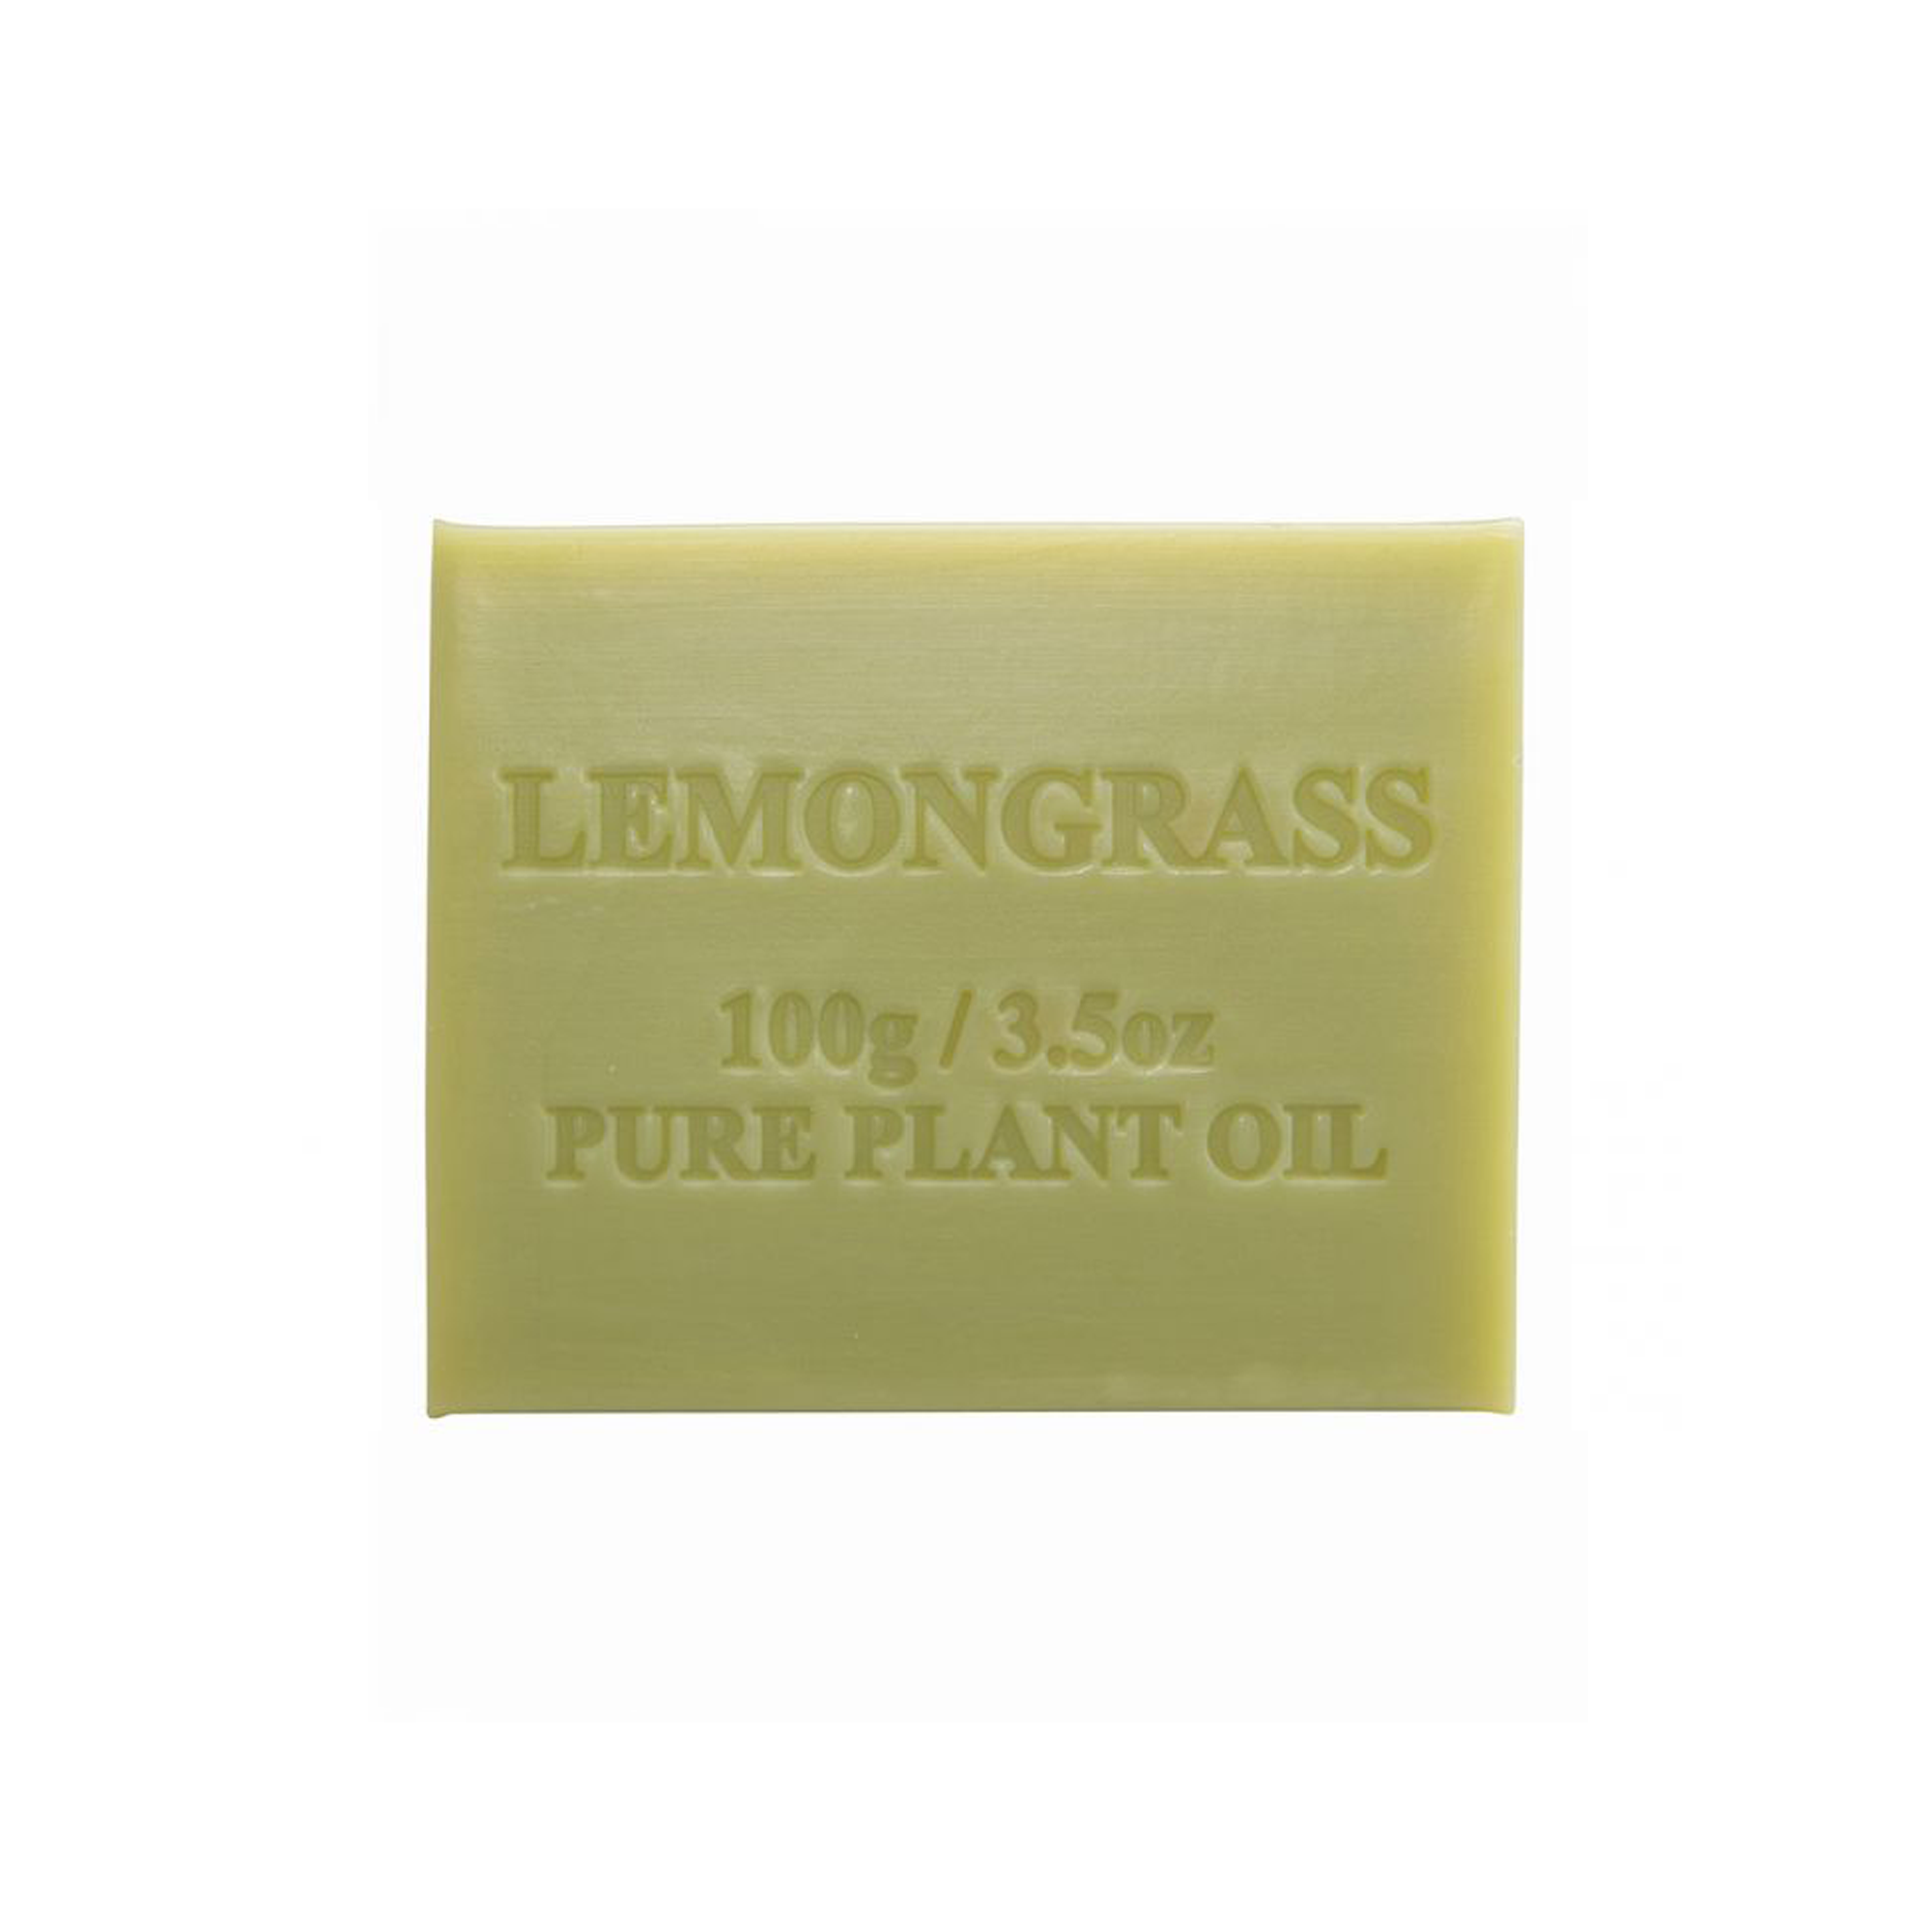 Lemongrass 100g